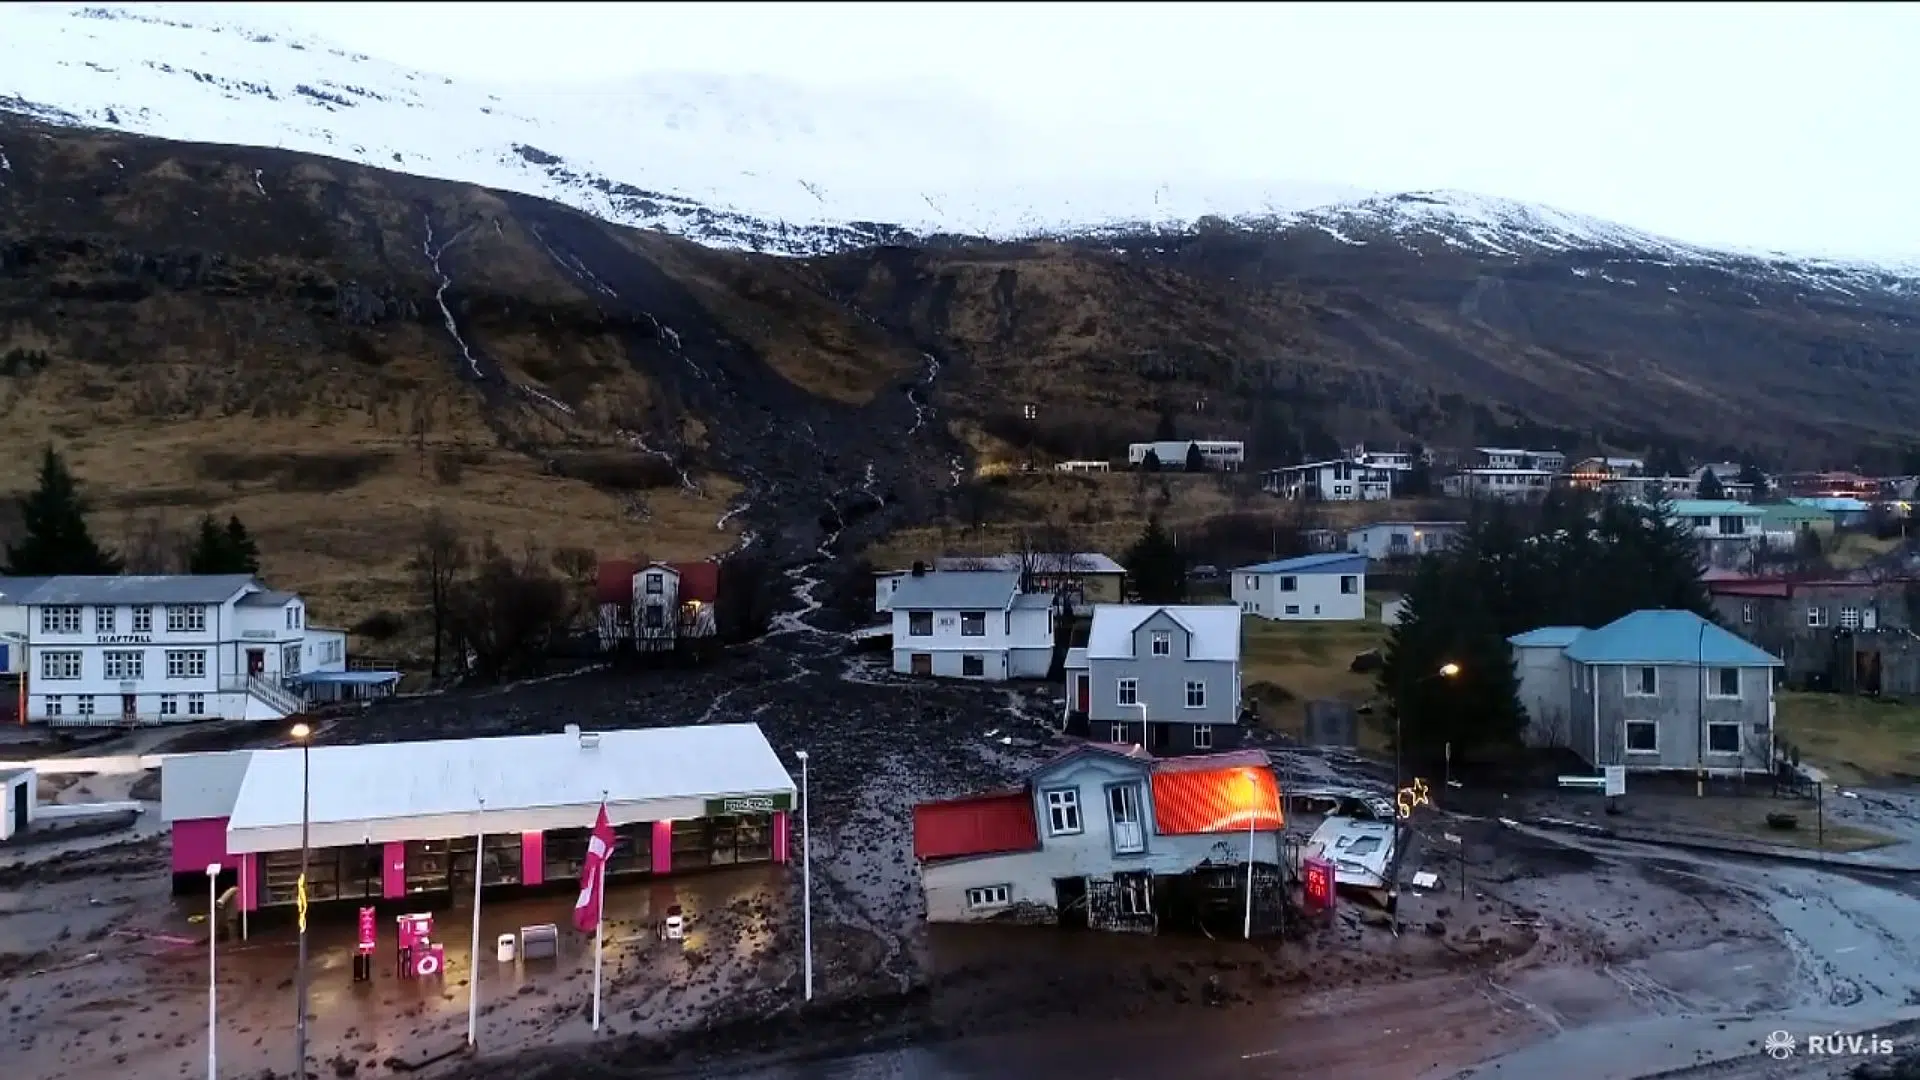 Seyðisfjörður Residents May Return Home